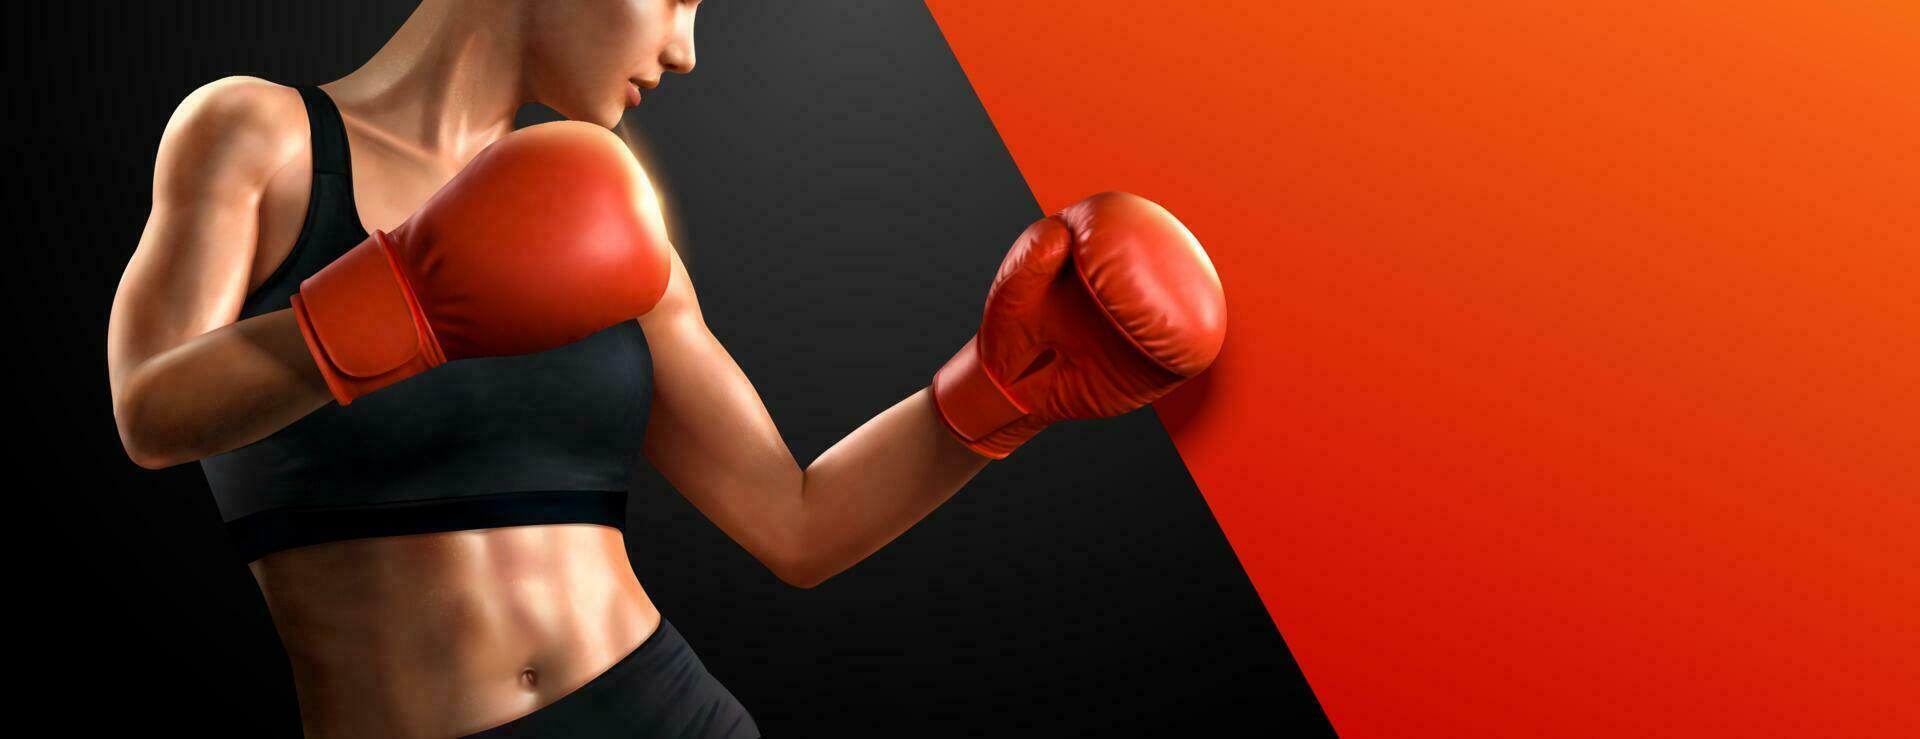 kvinna boxare med röd boxning handskar i 3d illustration, kopia Plats för annonser design vektor